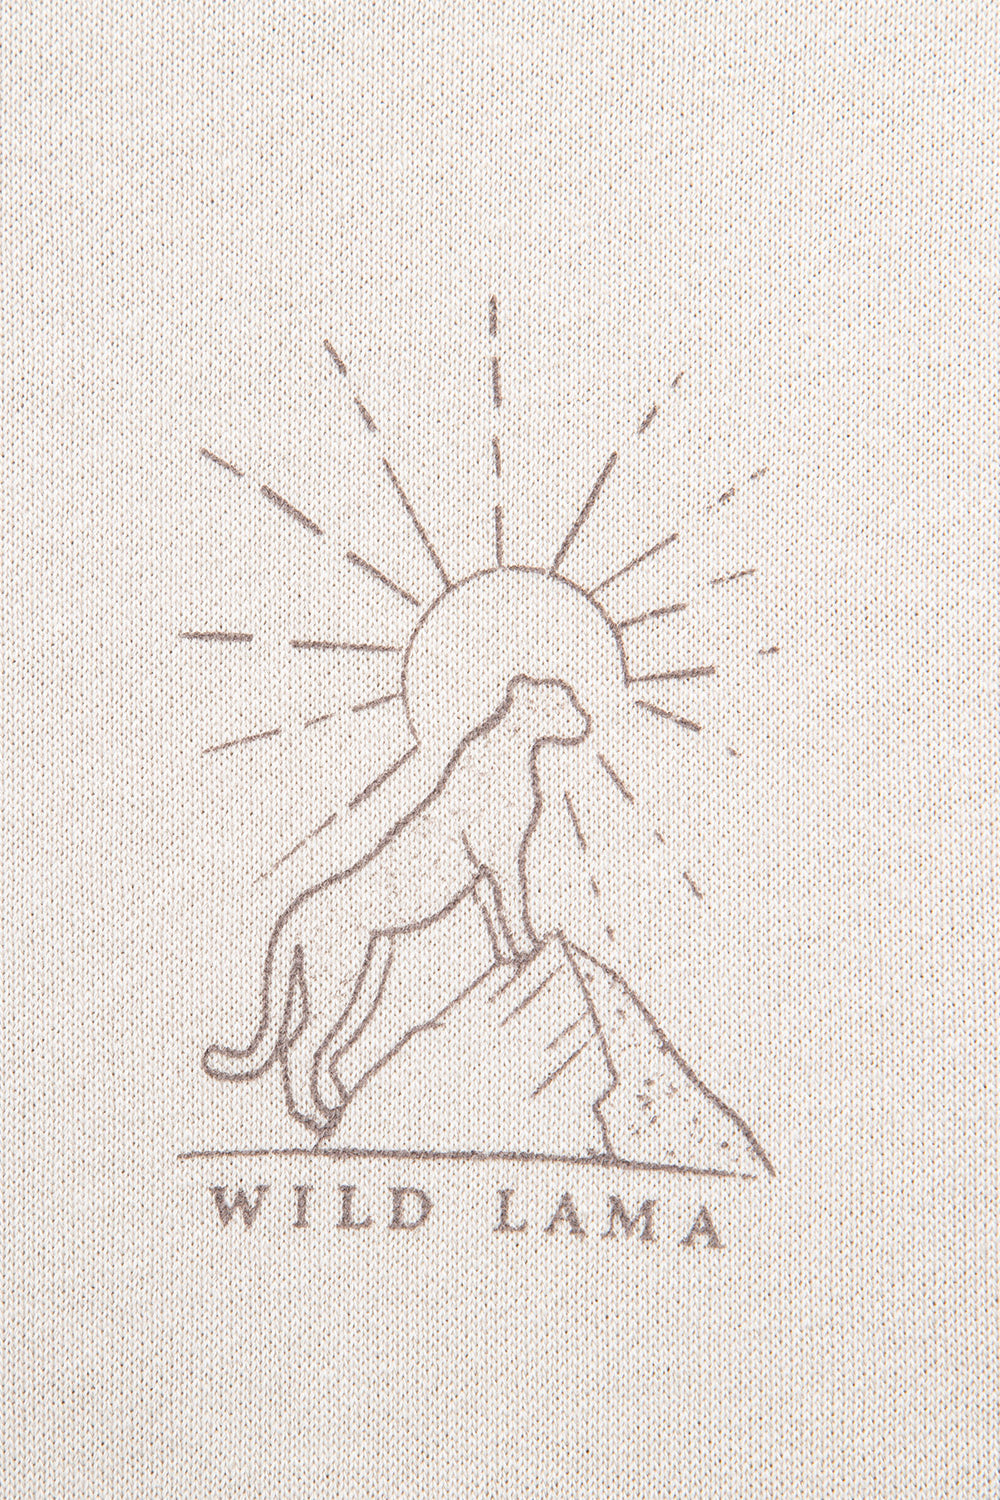 Polerón Mundos Orgánico Crudo | Wild Lama